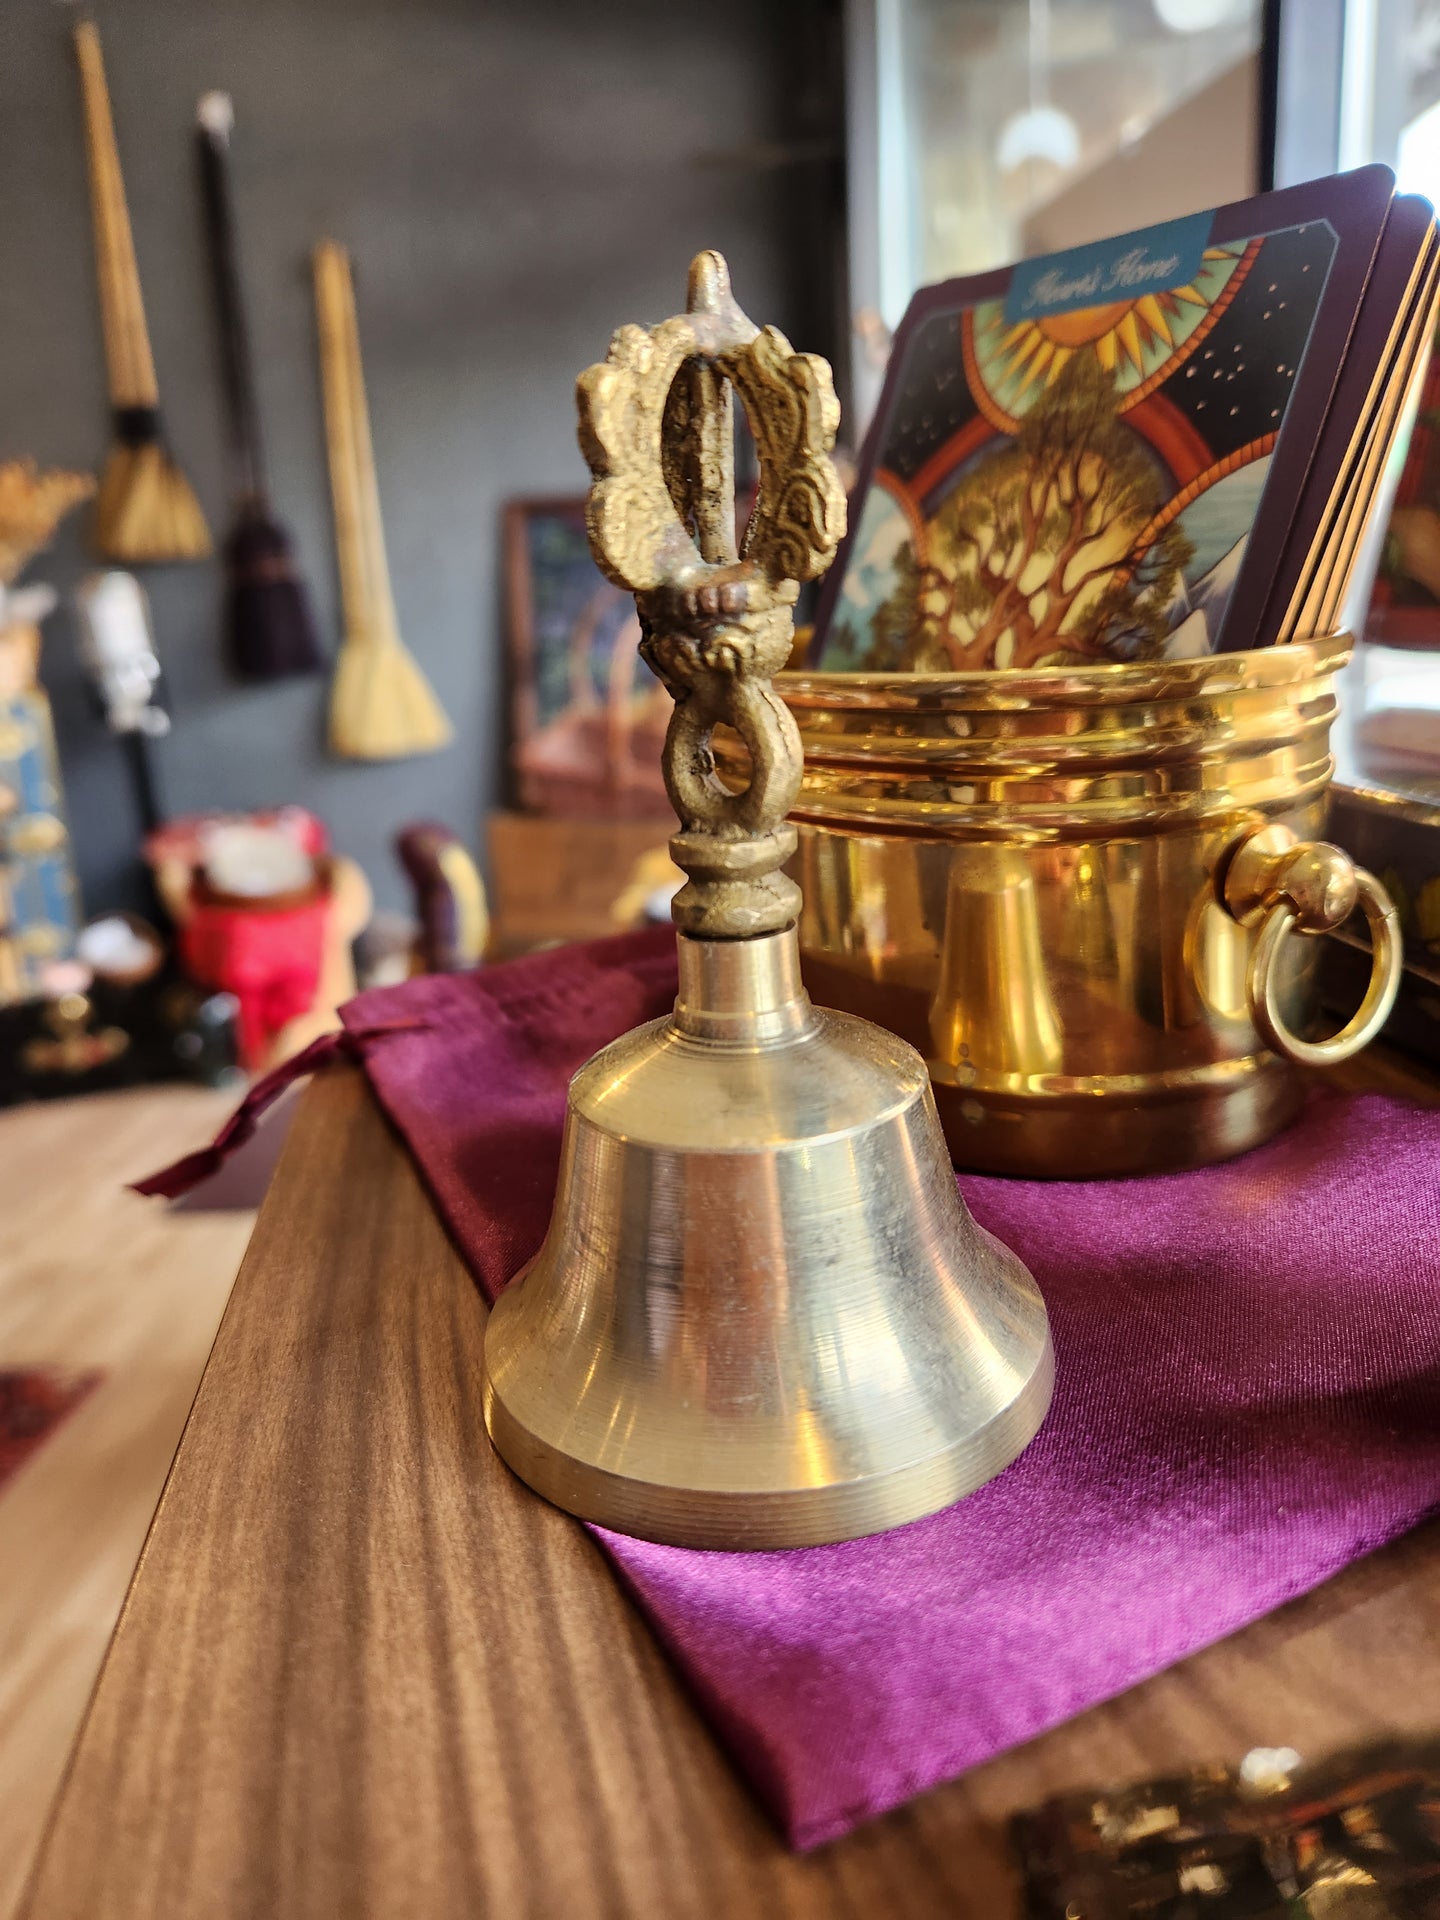 Medium brass bell